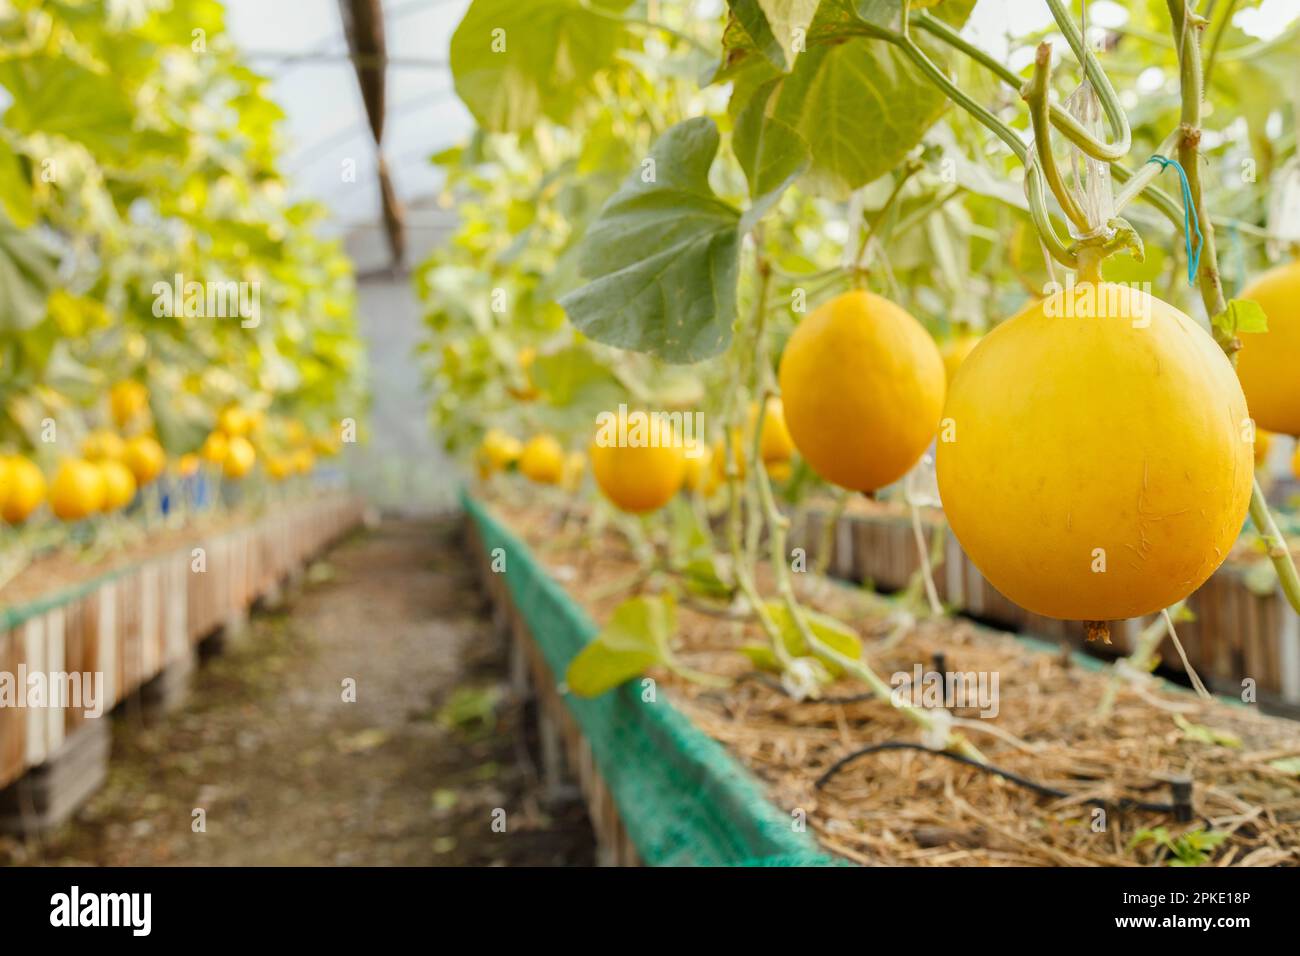 Produits frais bio melon cantaloup jaune ou doré melon prêt à la récolte dans la serre à la ferme. L'agriculture et de melon fruit farm concept Banque D'Images